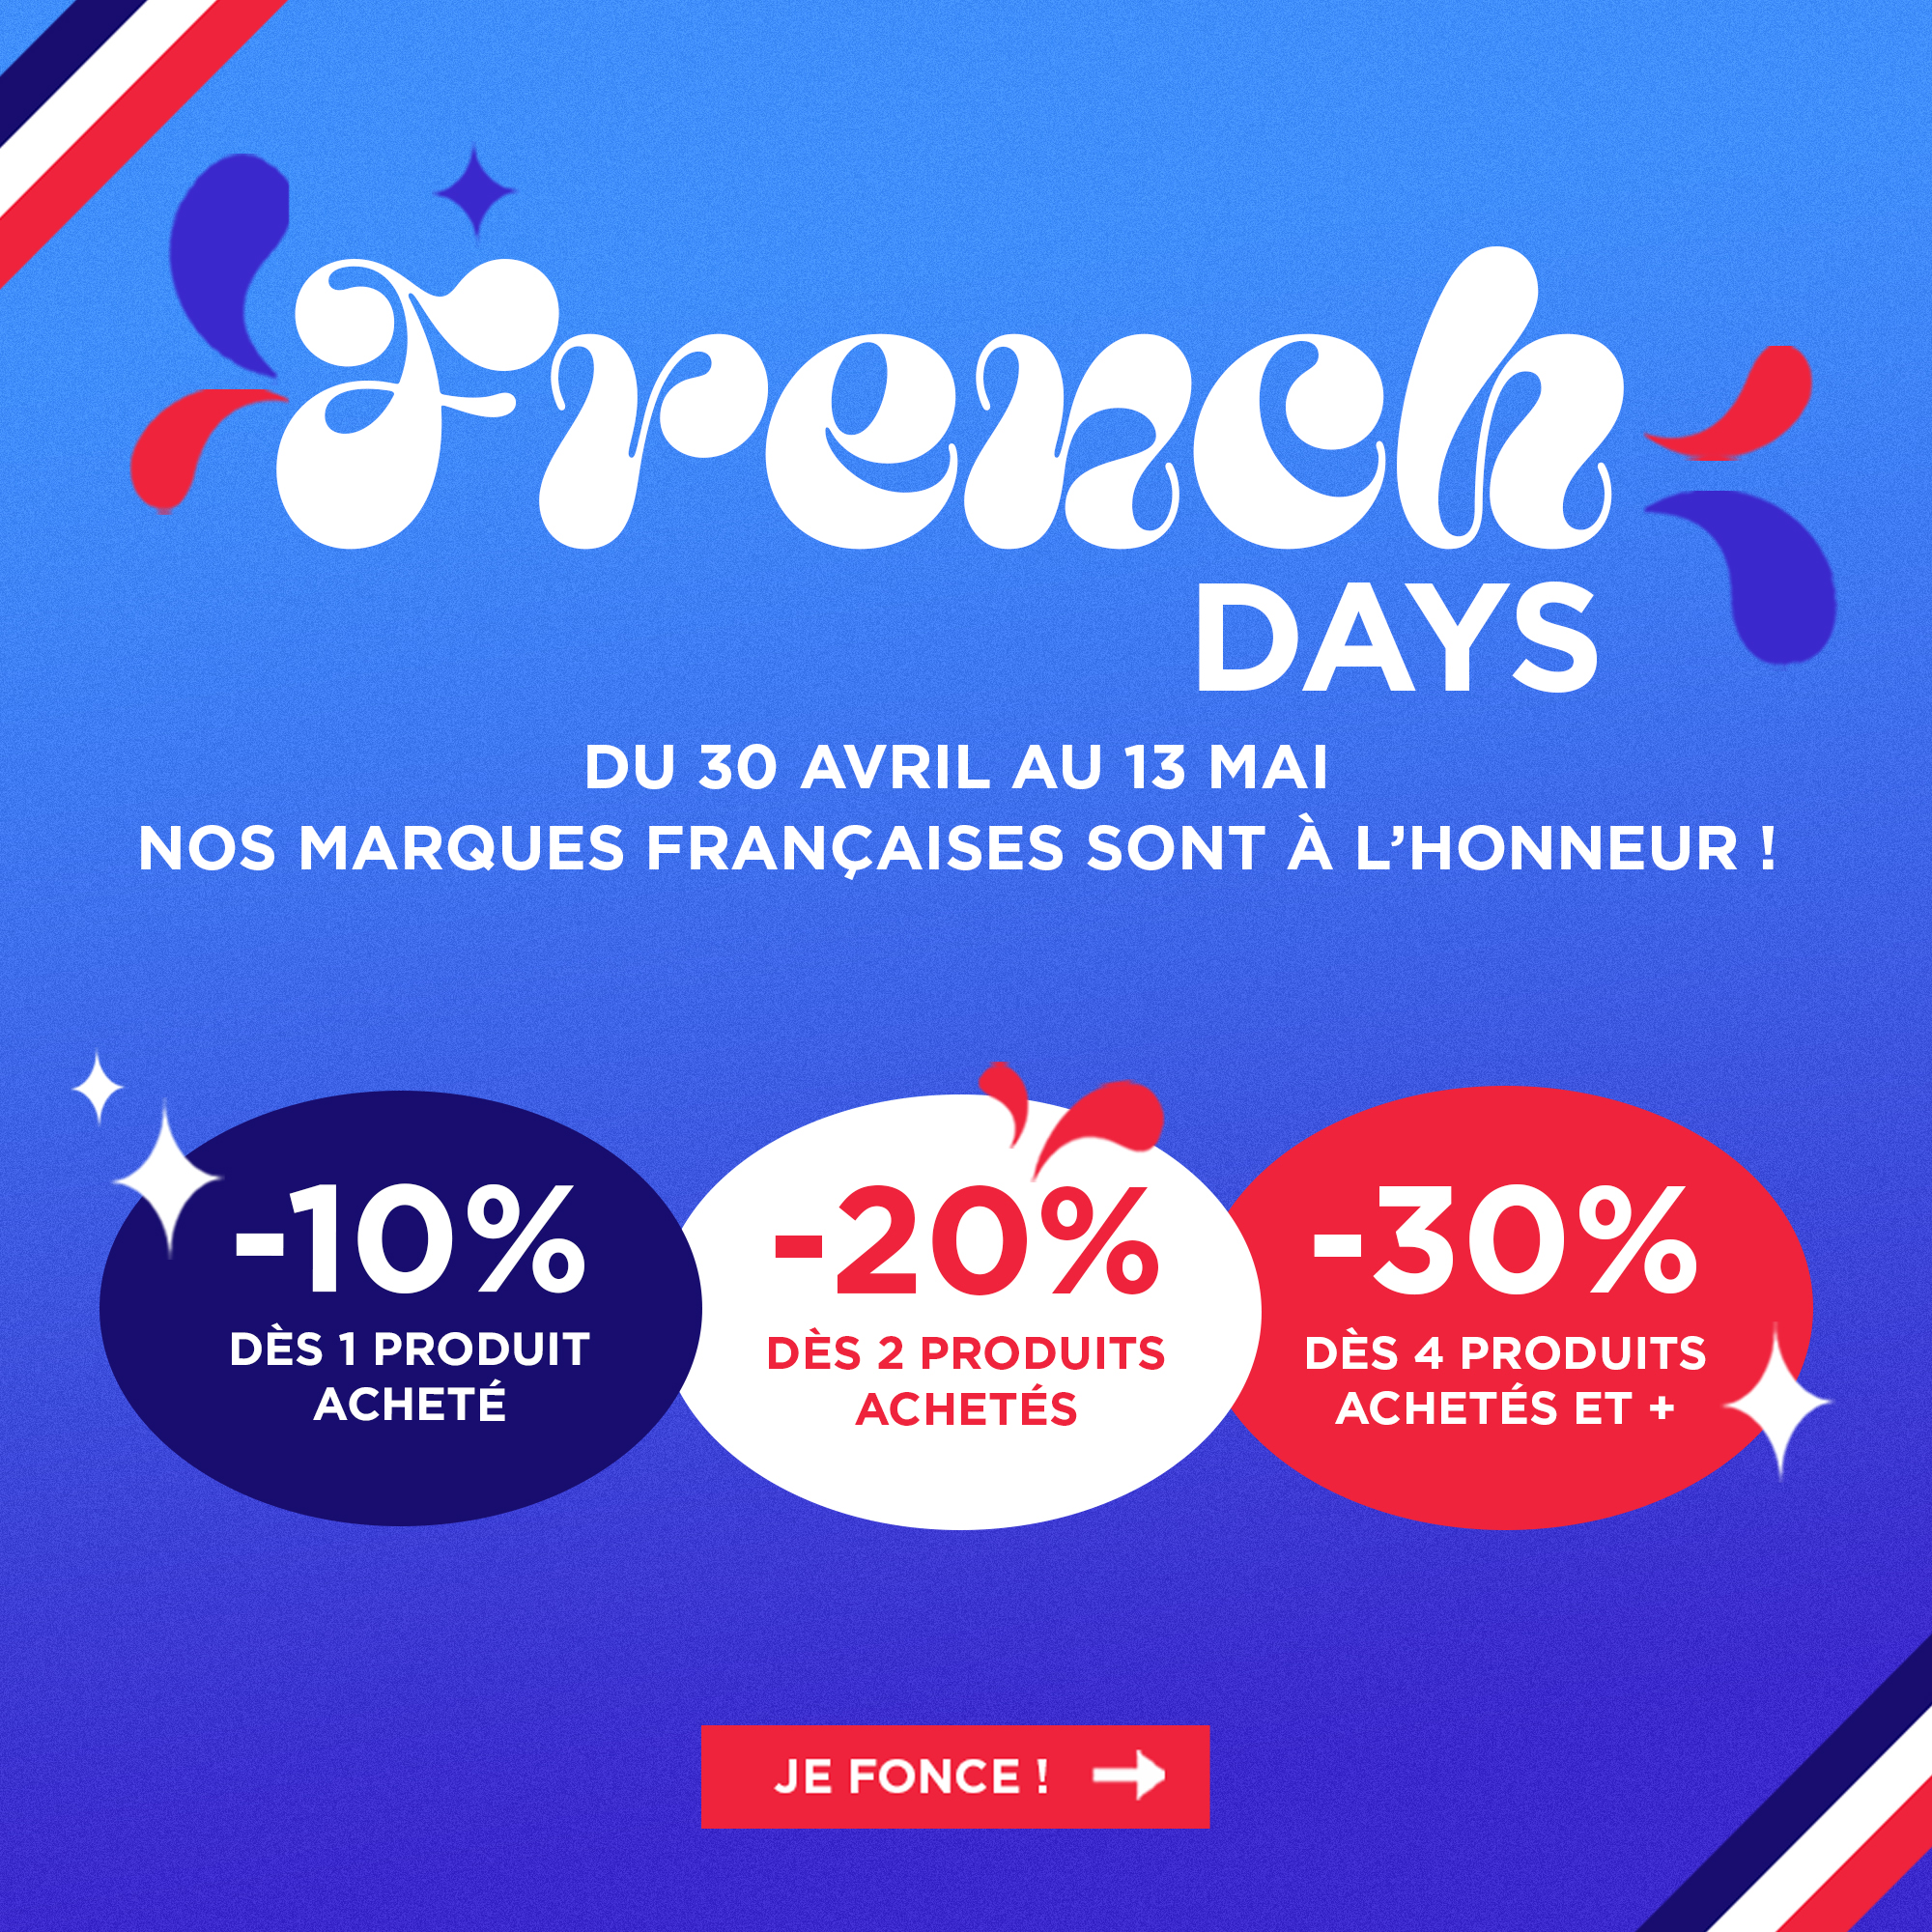 French Days : Du 30 au 7 Mai profitez de nos bon plans jusqu'à 30% de remise sur toutes nos marques françaises !